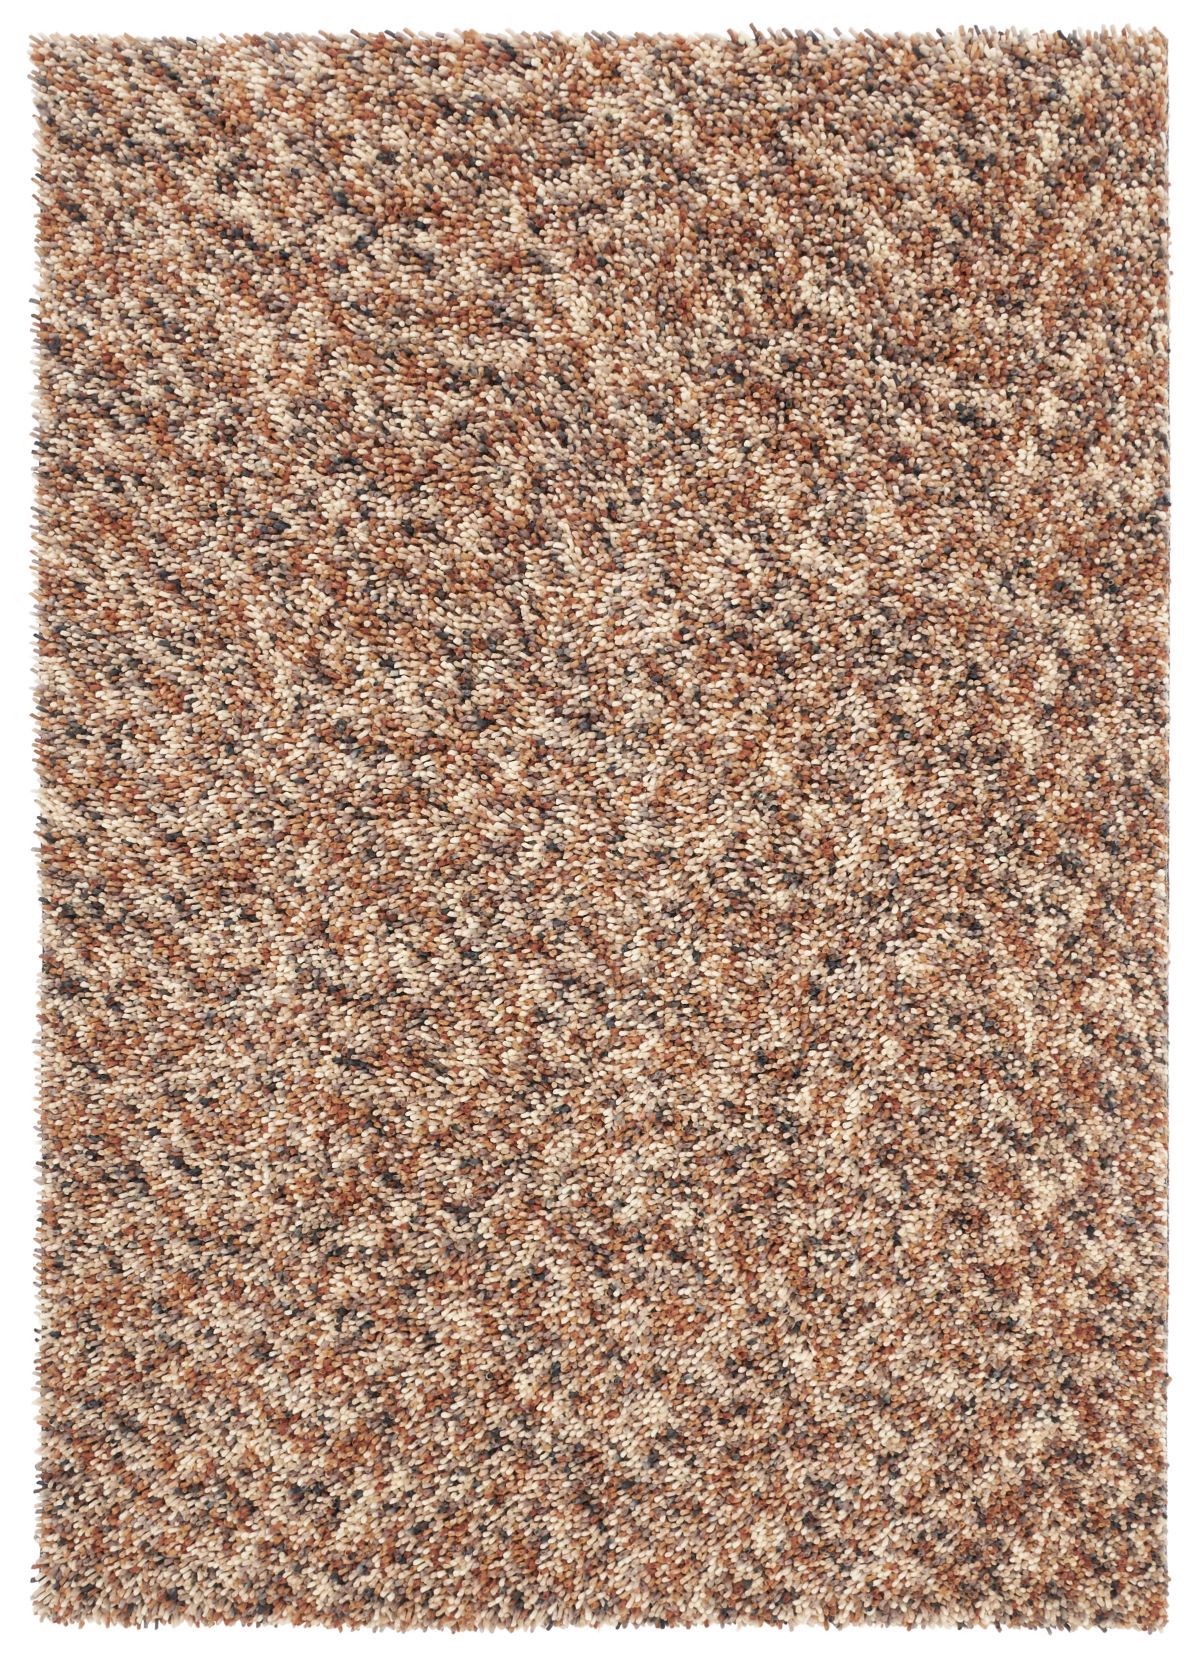 brink-and-campman-rug-dots-170501